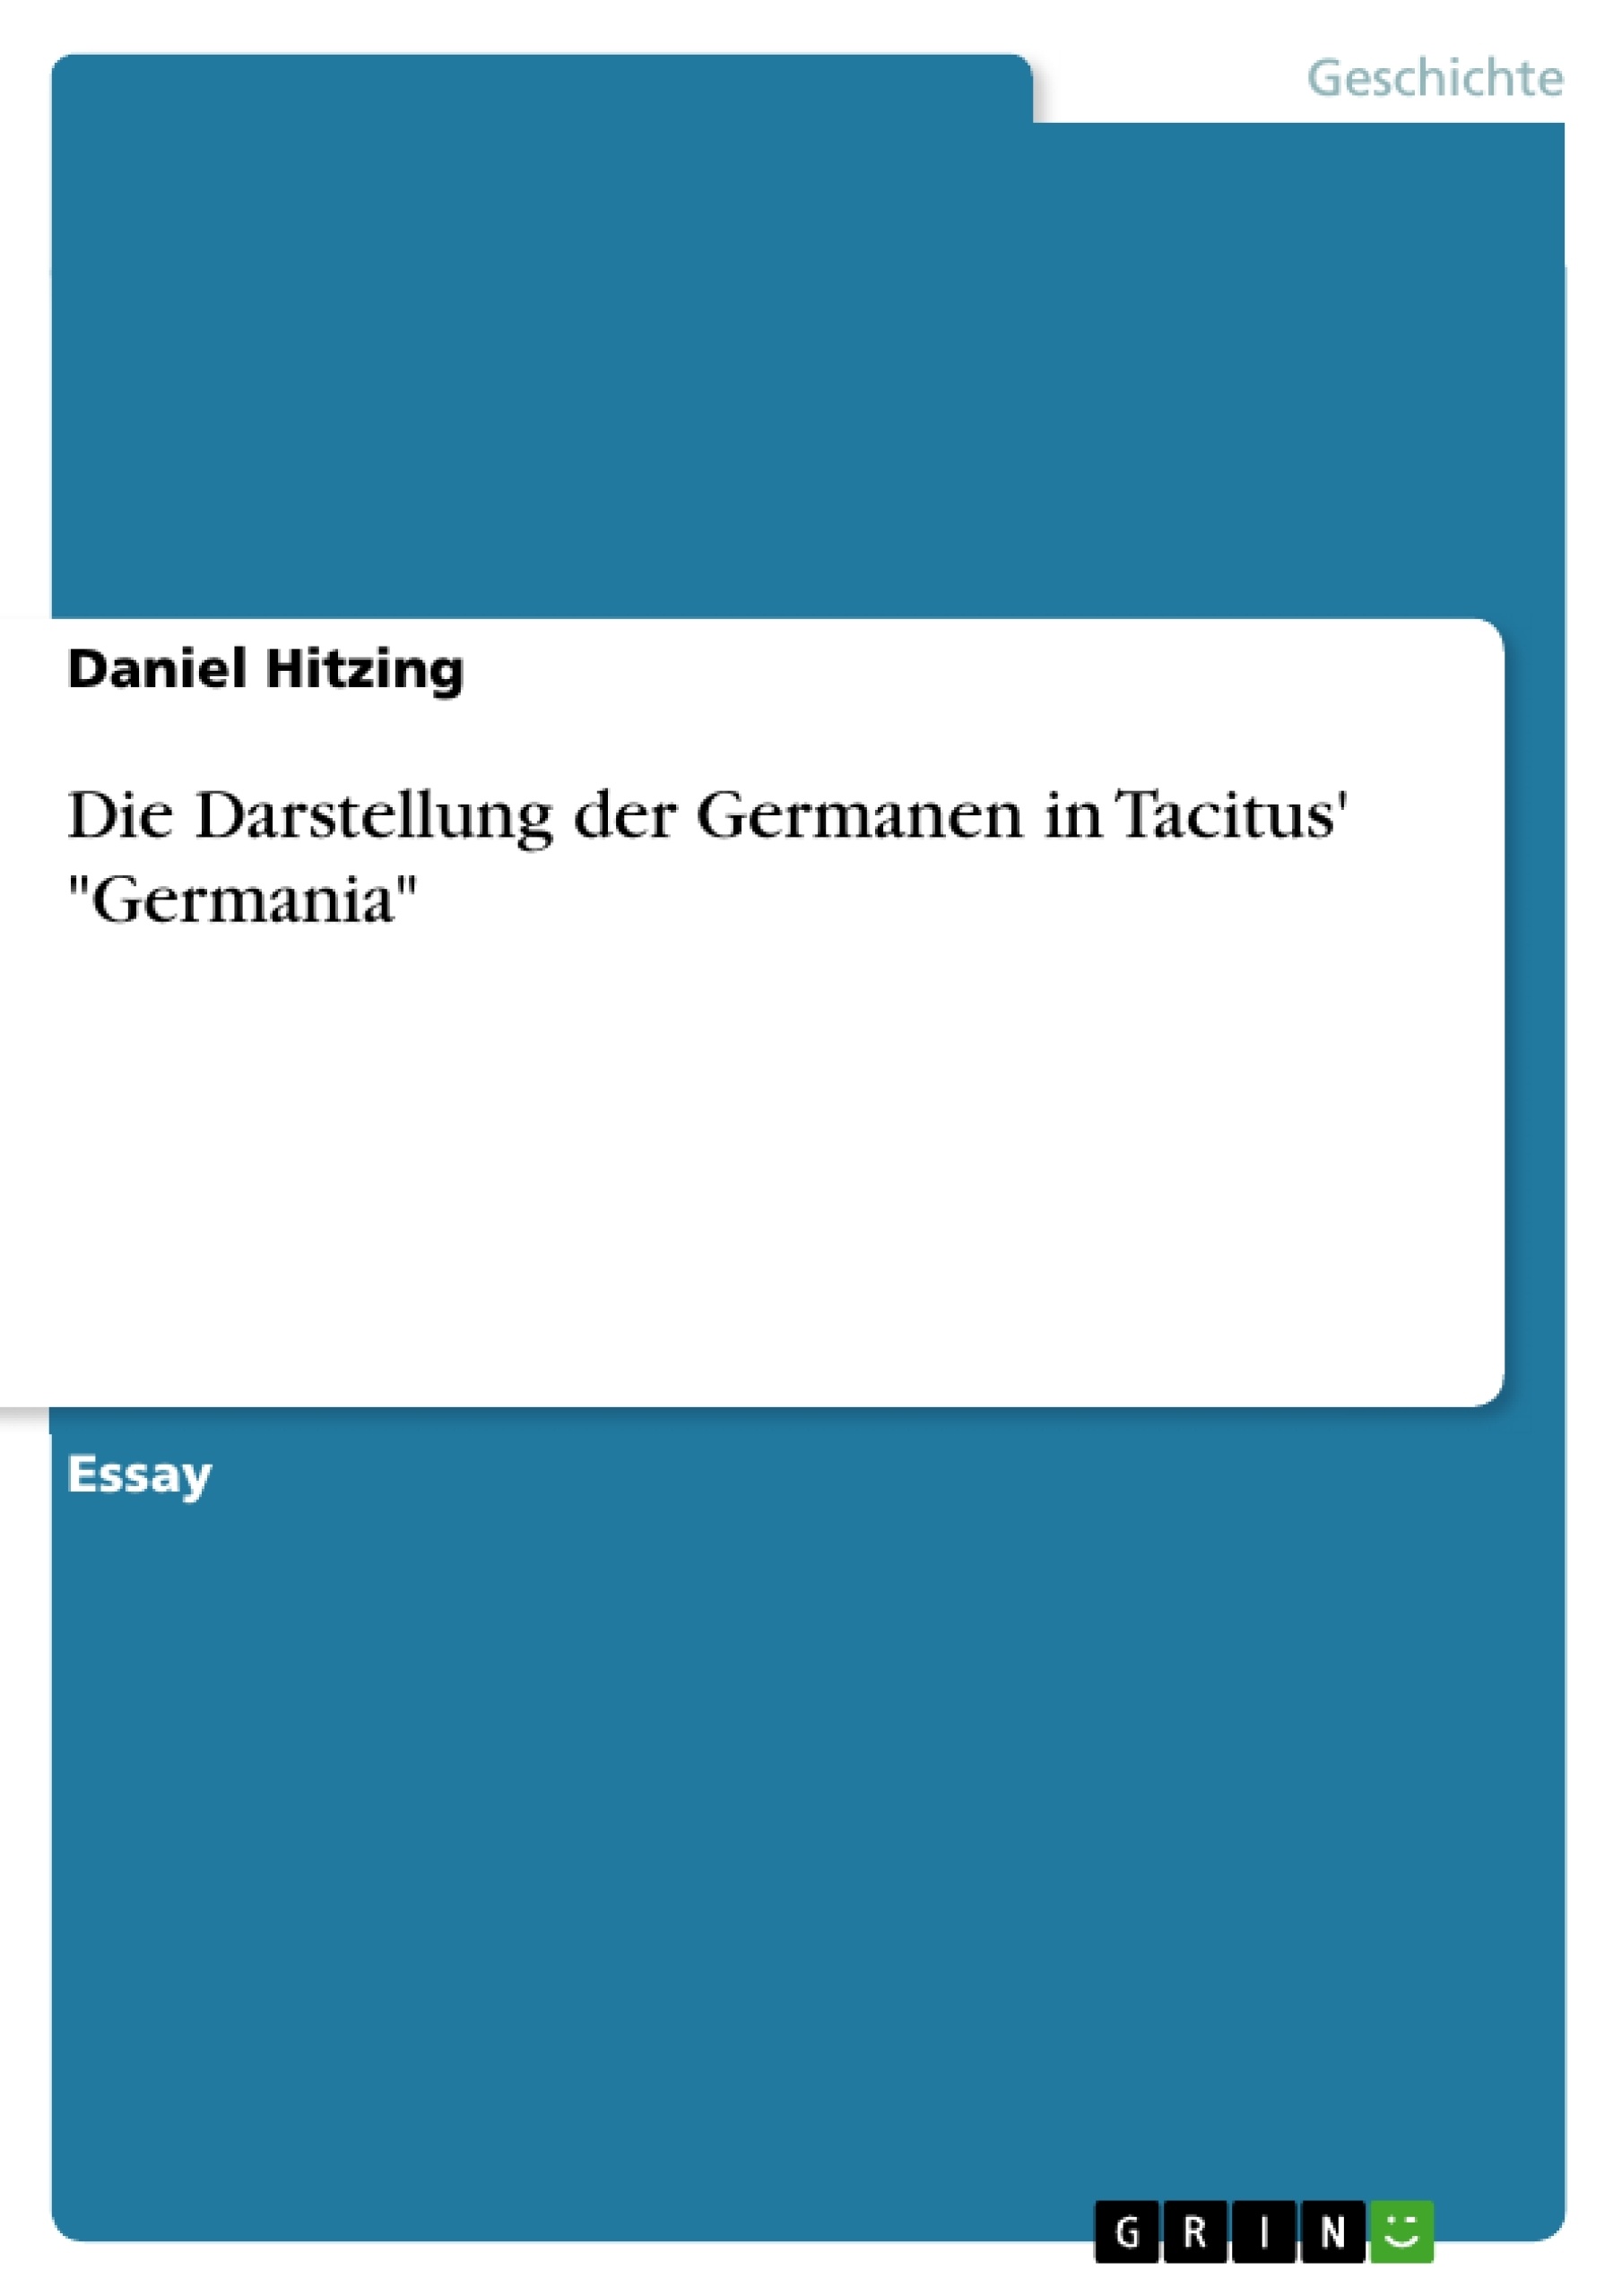 Title: Die Darstellung der Germanen in Tacitus' "Germania"